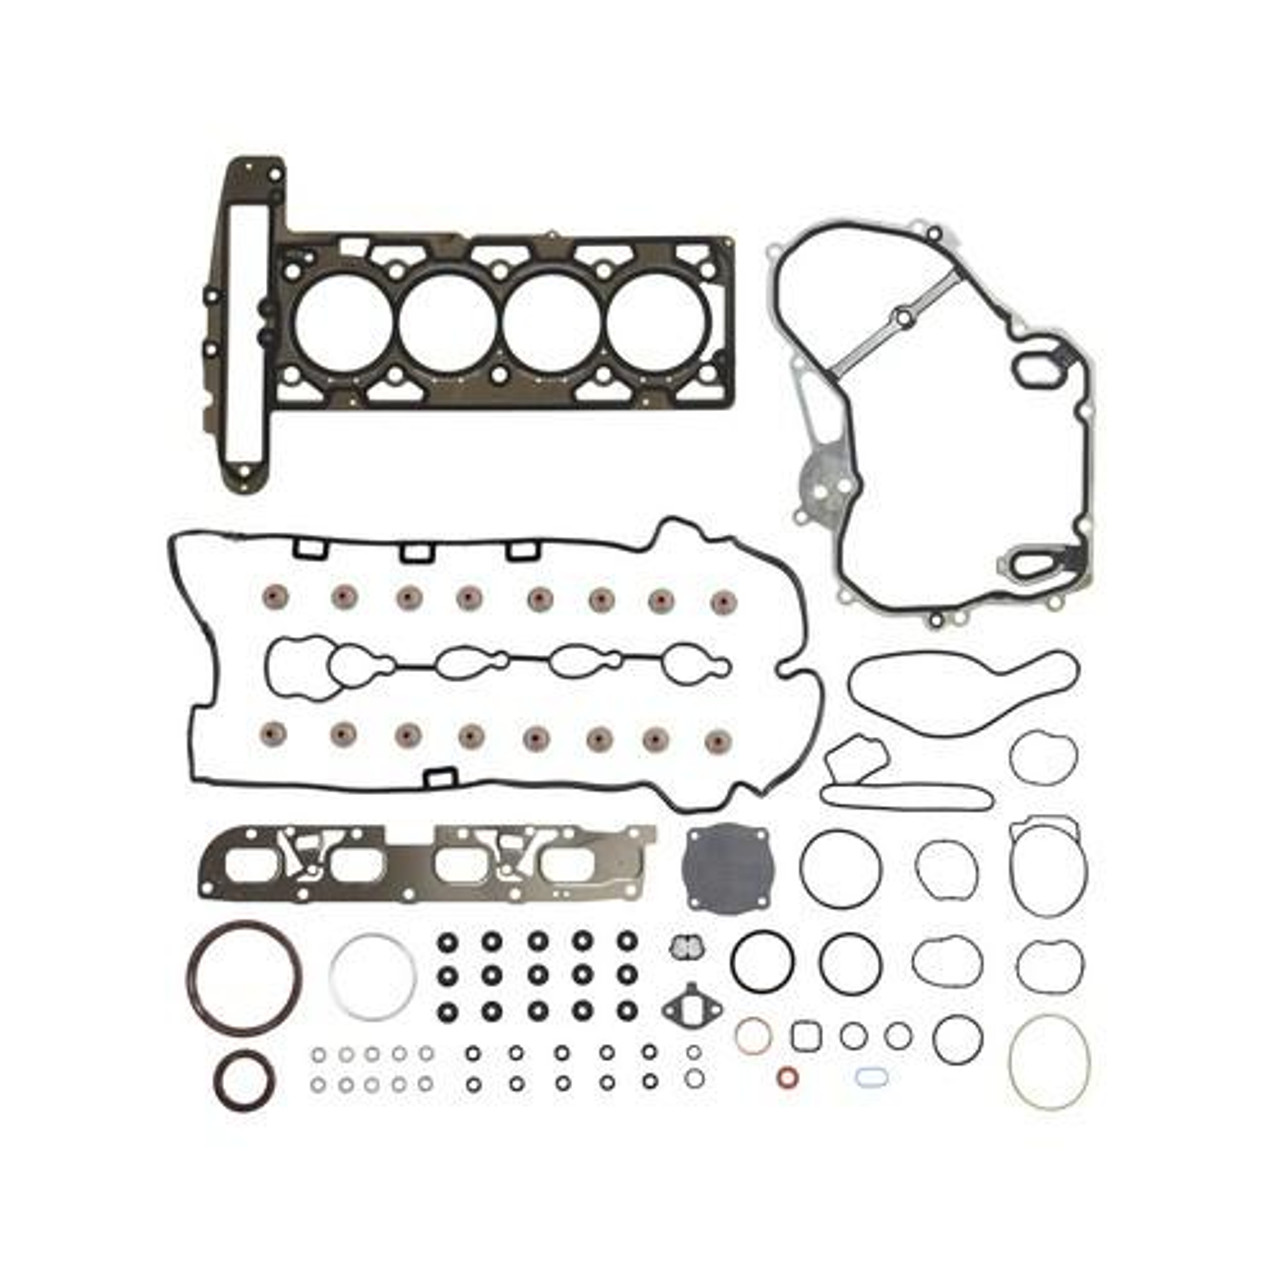 Full Gasket Set - 2010 Buick LaCrosse 2.4L Engine Parts # FGS4233ZE1